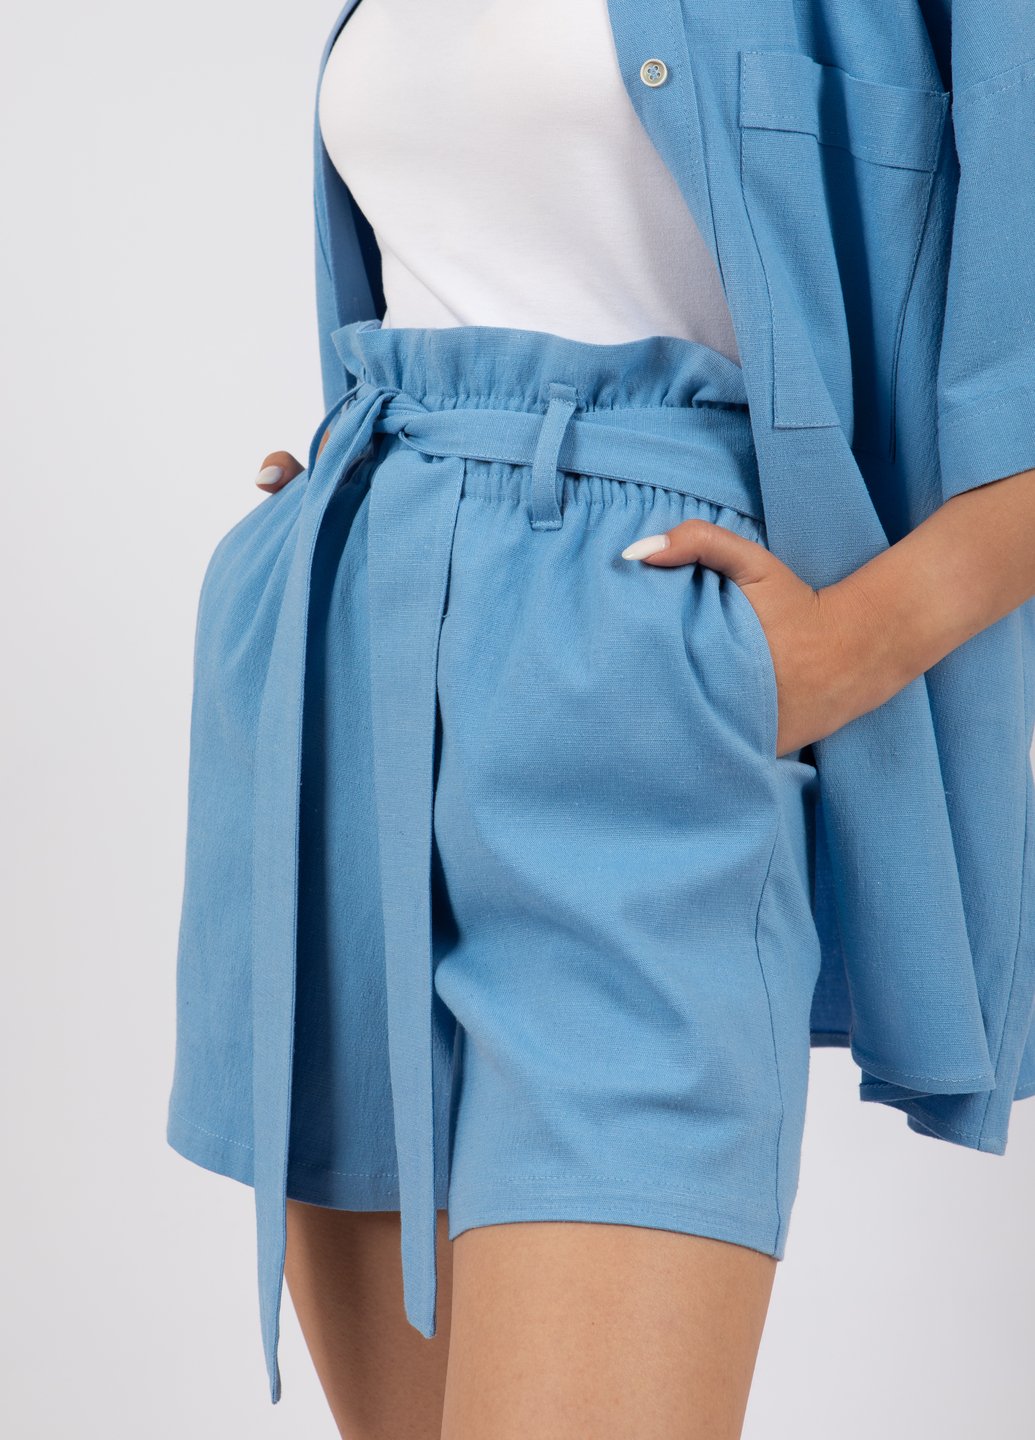 Купить Льняные шорты женские Merlini Тулуза 300000008 - Голубой, 42-44 в интернет-магазине